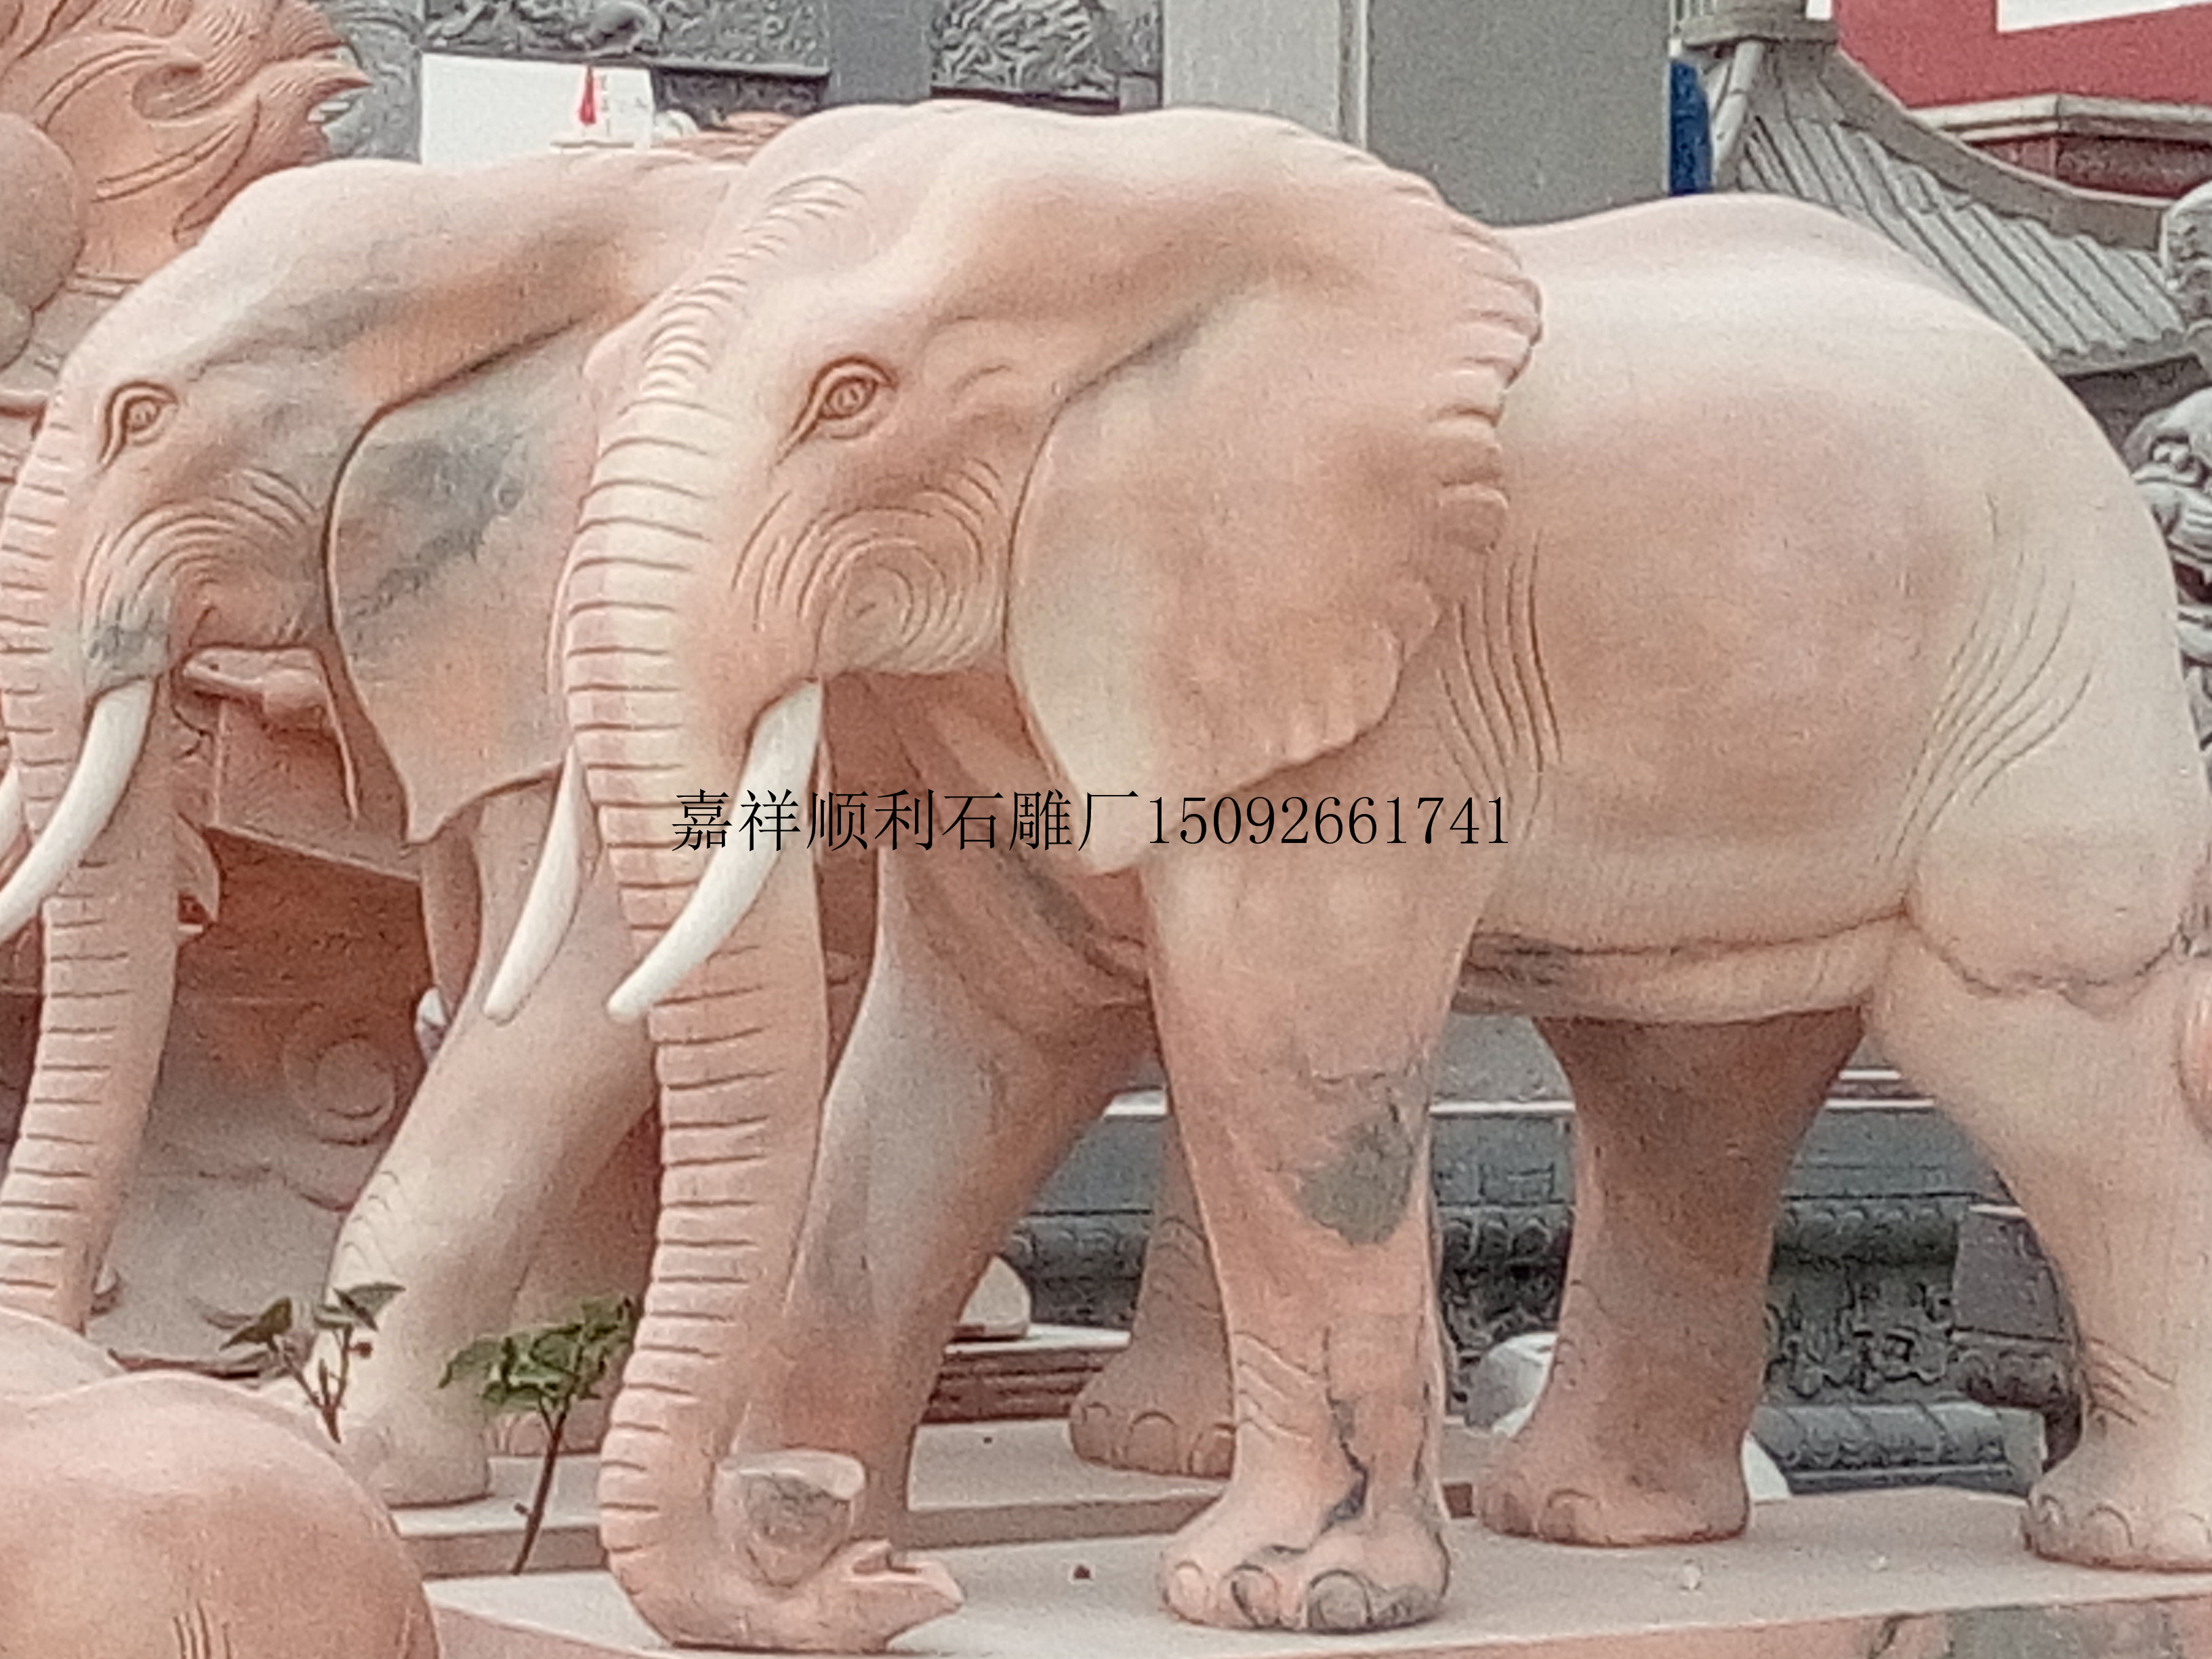 石雕大象 石雕大象喷水大象 石雕大象喷水大象如意大象 石雕大象喷水大象寺庙石大象图片